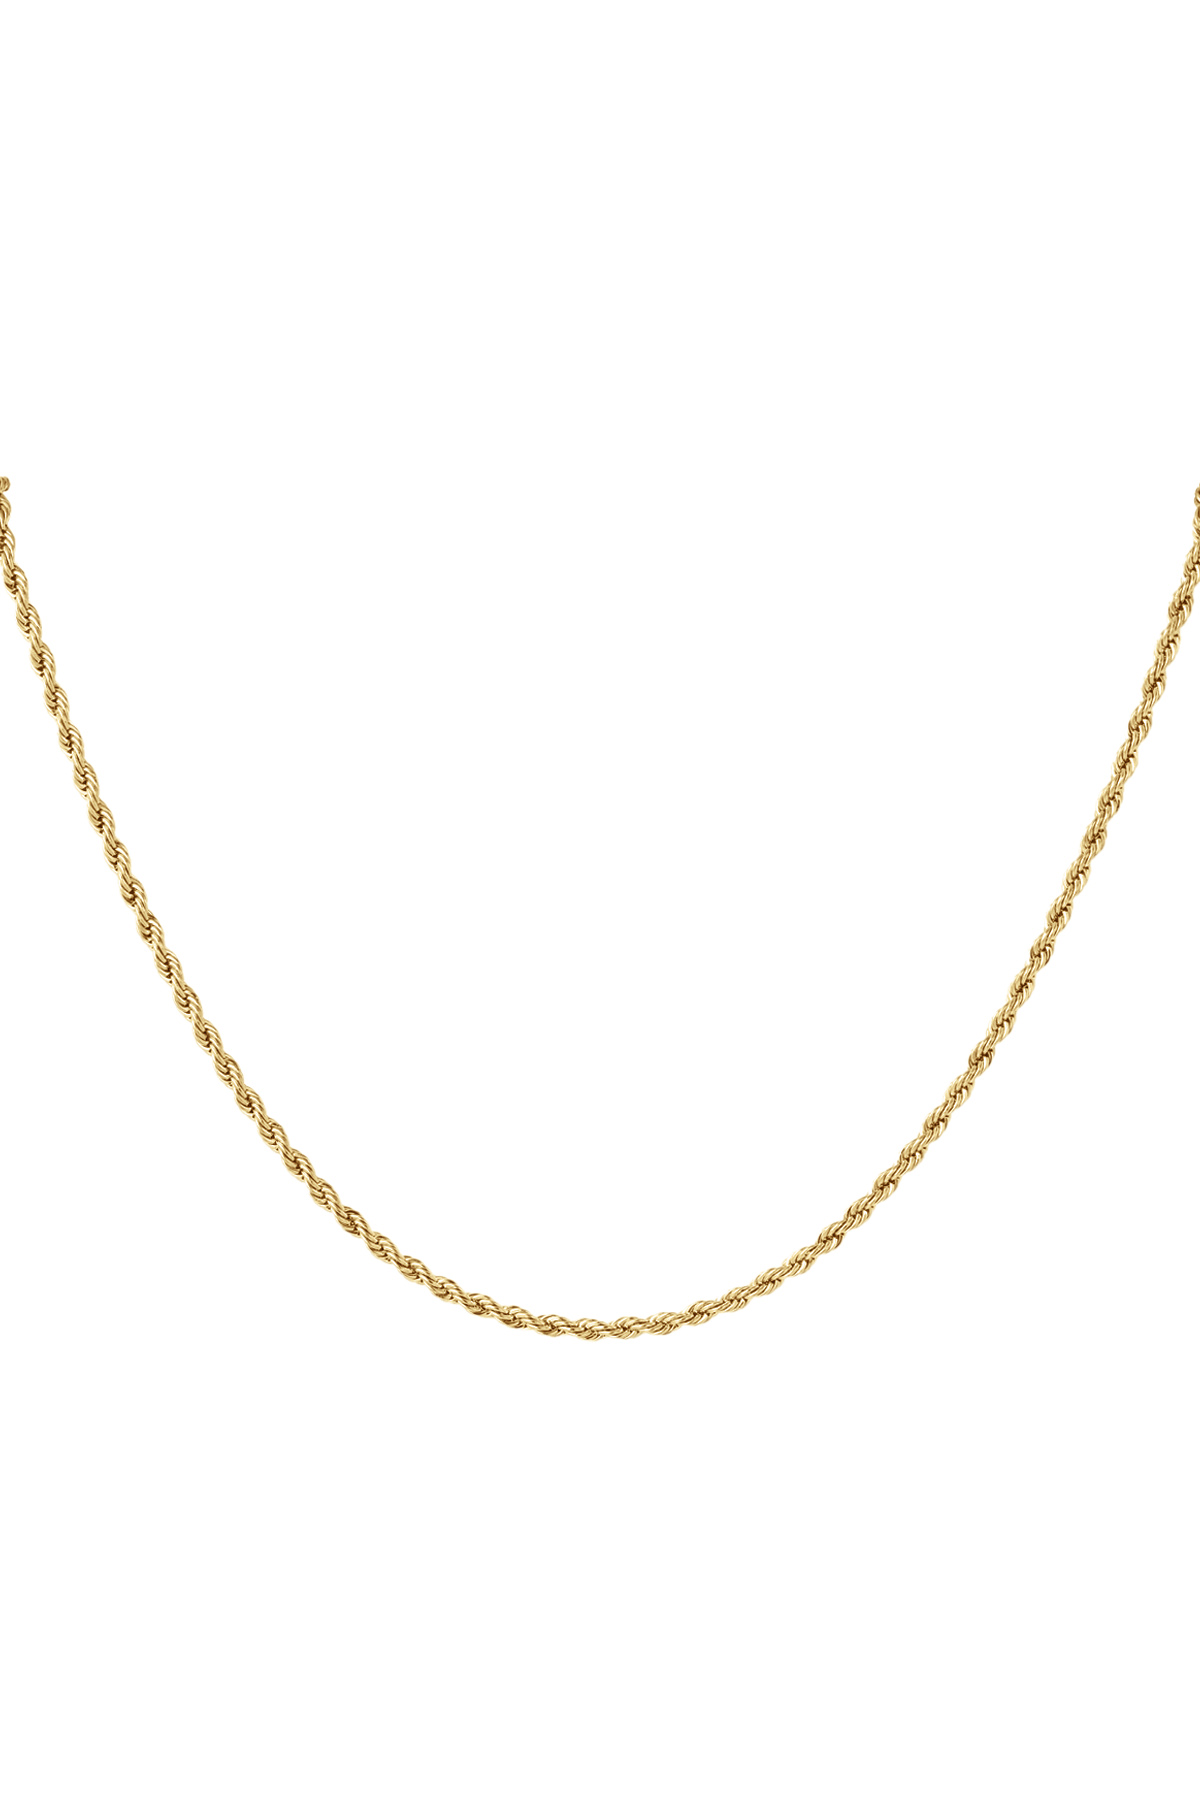 Unisex Halskette fein gedreht - Gold - 3,0 MM h5 